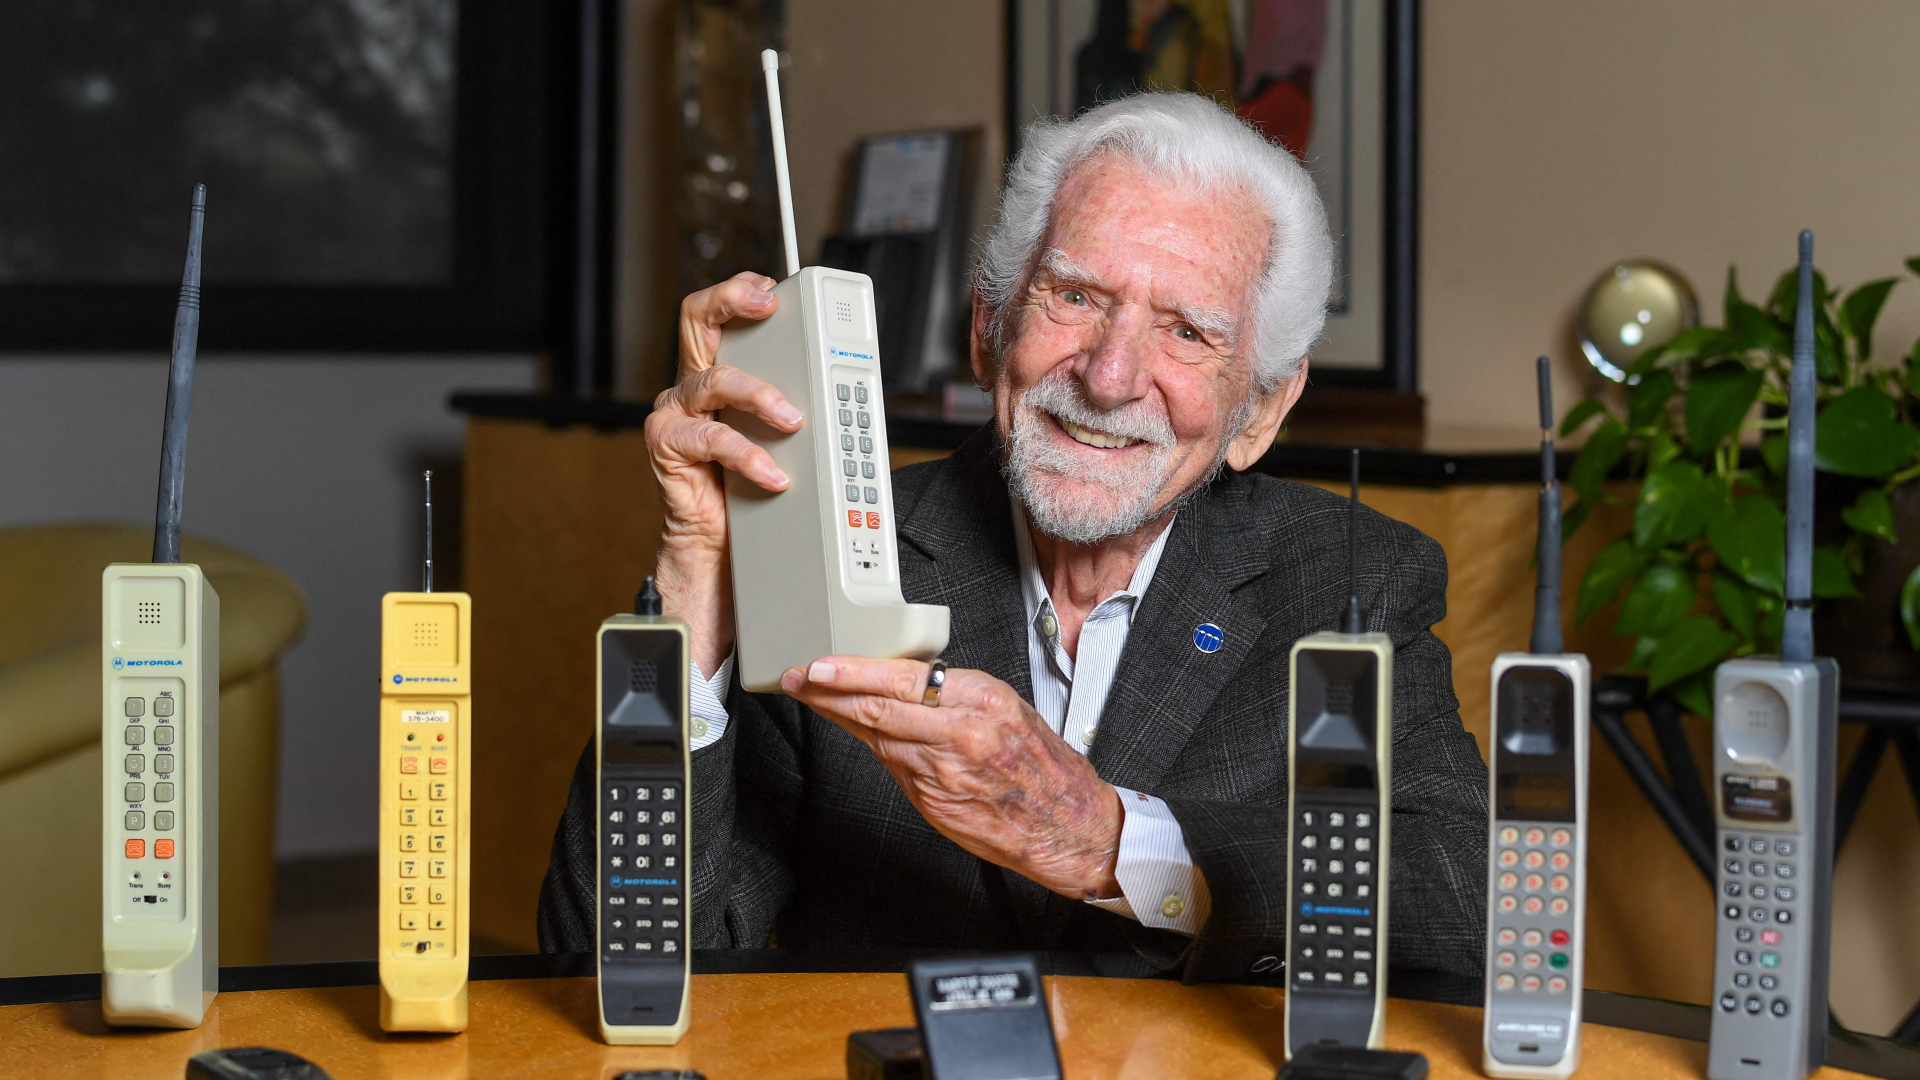 Ingenieur Martin Cooper hält eine zeitgenössische Kopie des Original-Handys, mit dem er am 3. April 1973 den ersten Handyanruf getätigt hat.